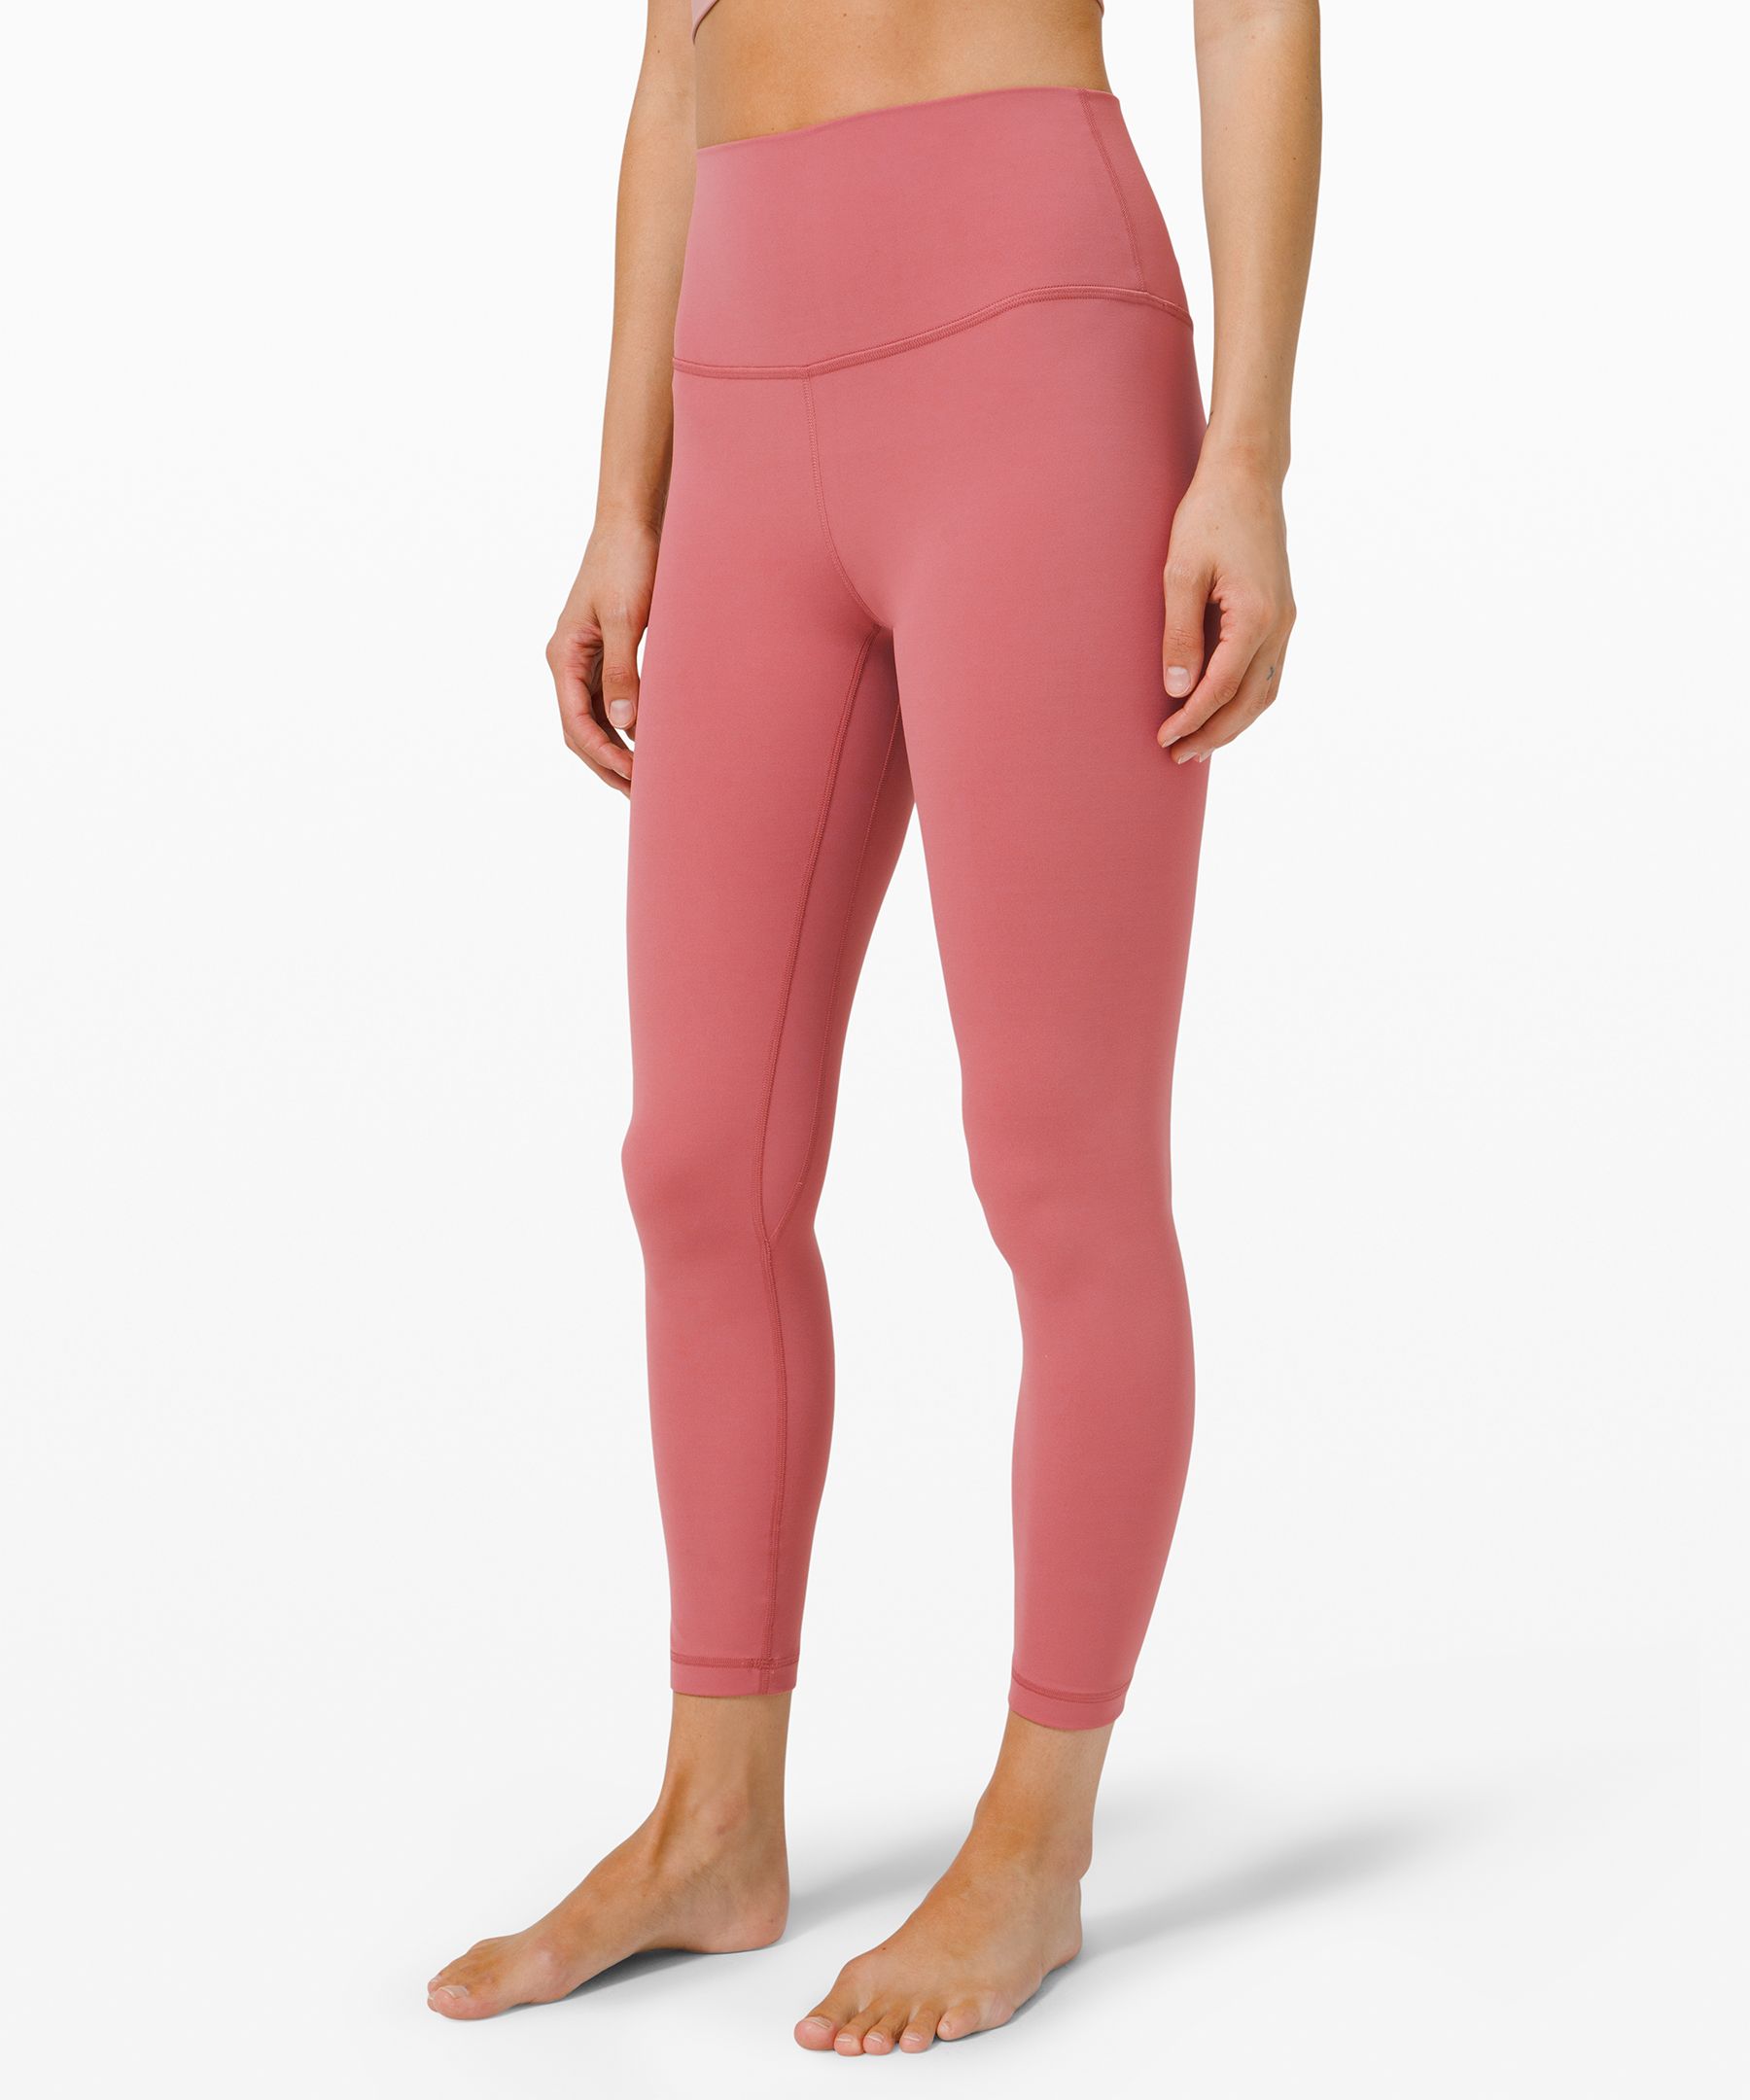 light pink lululemon leggings